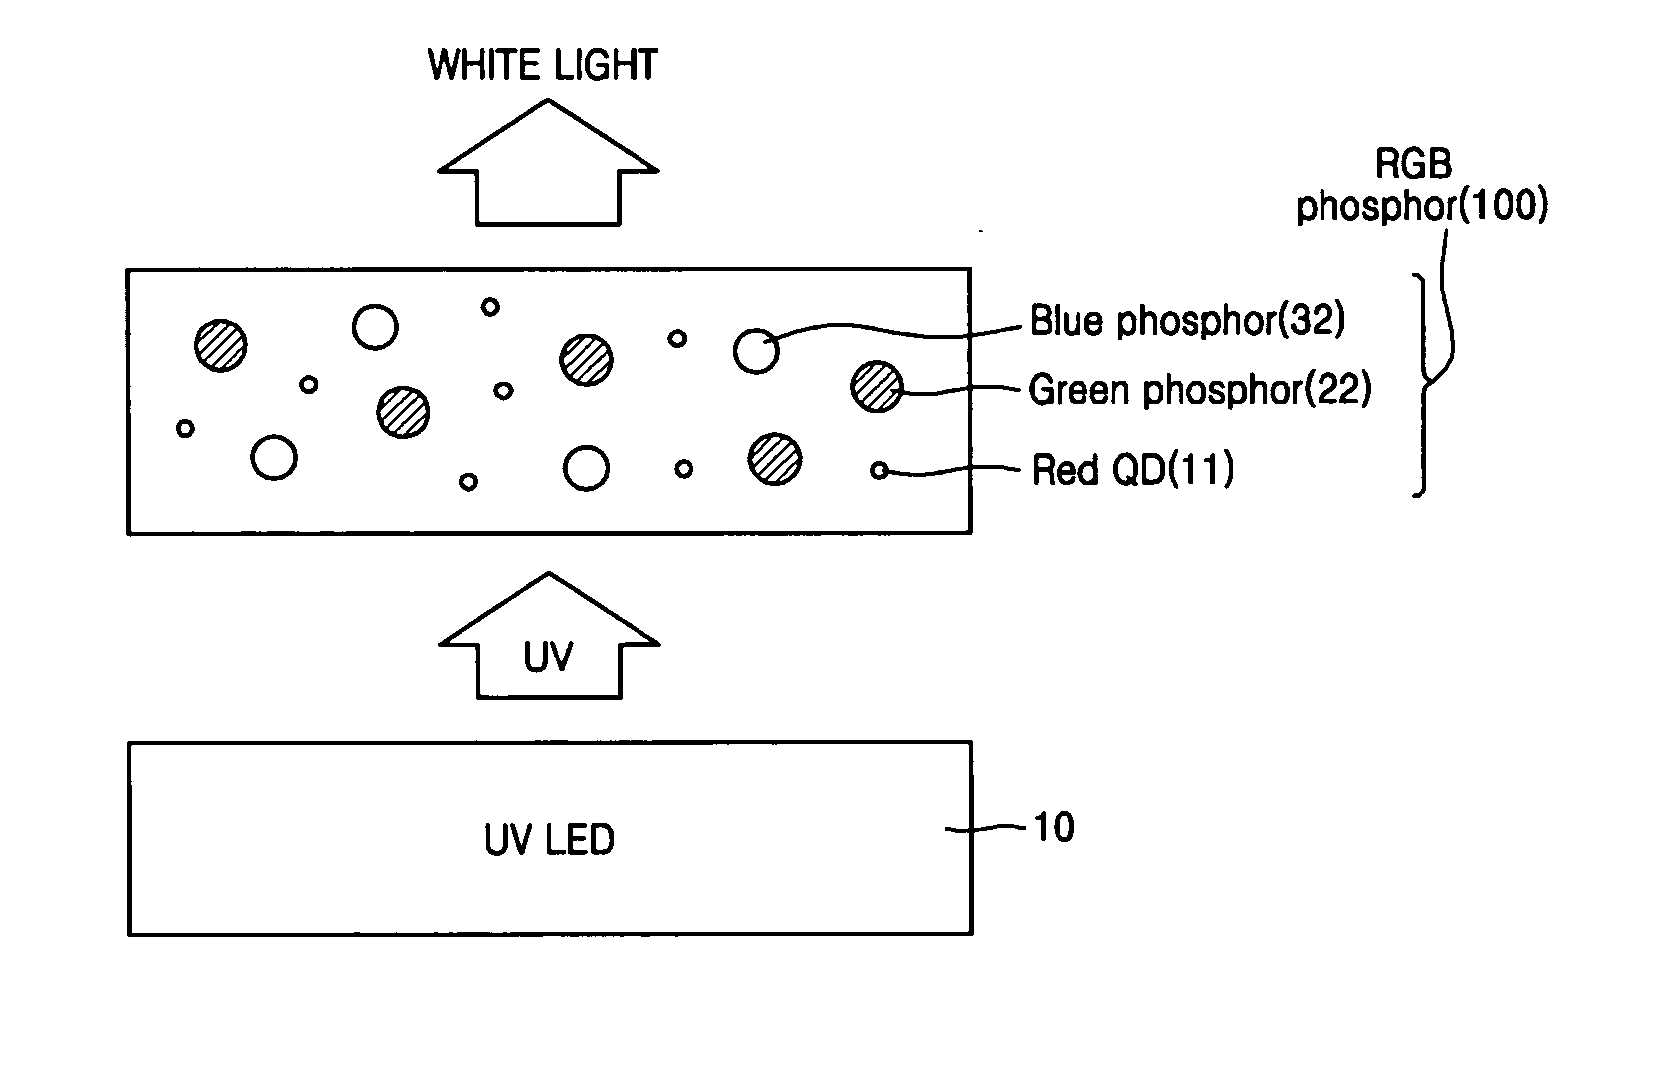 White light emitting device